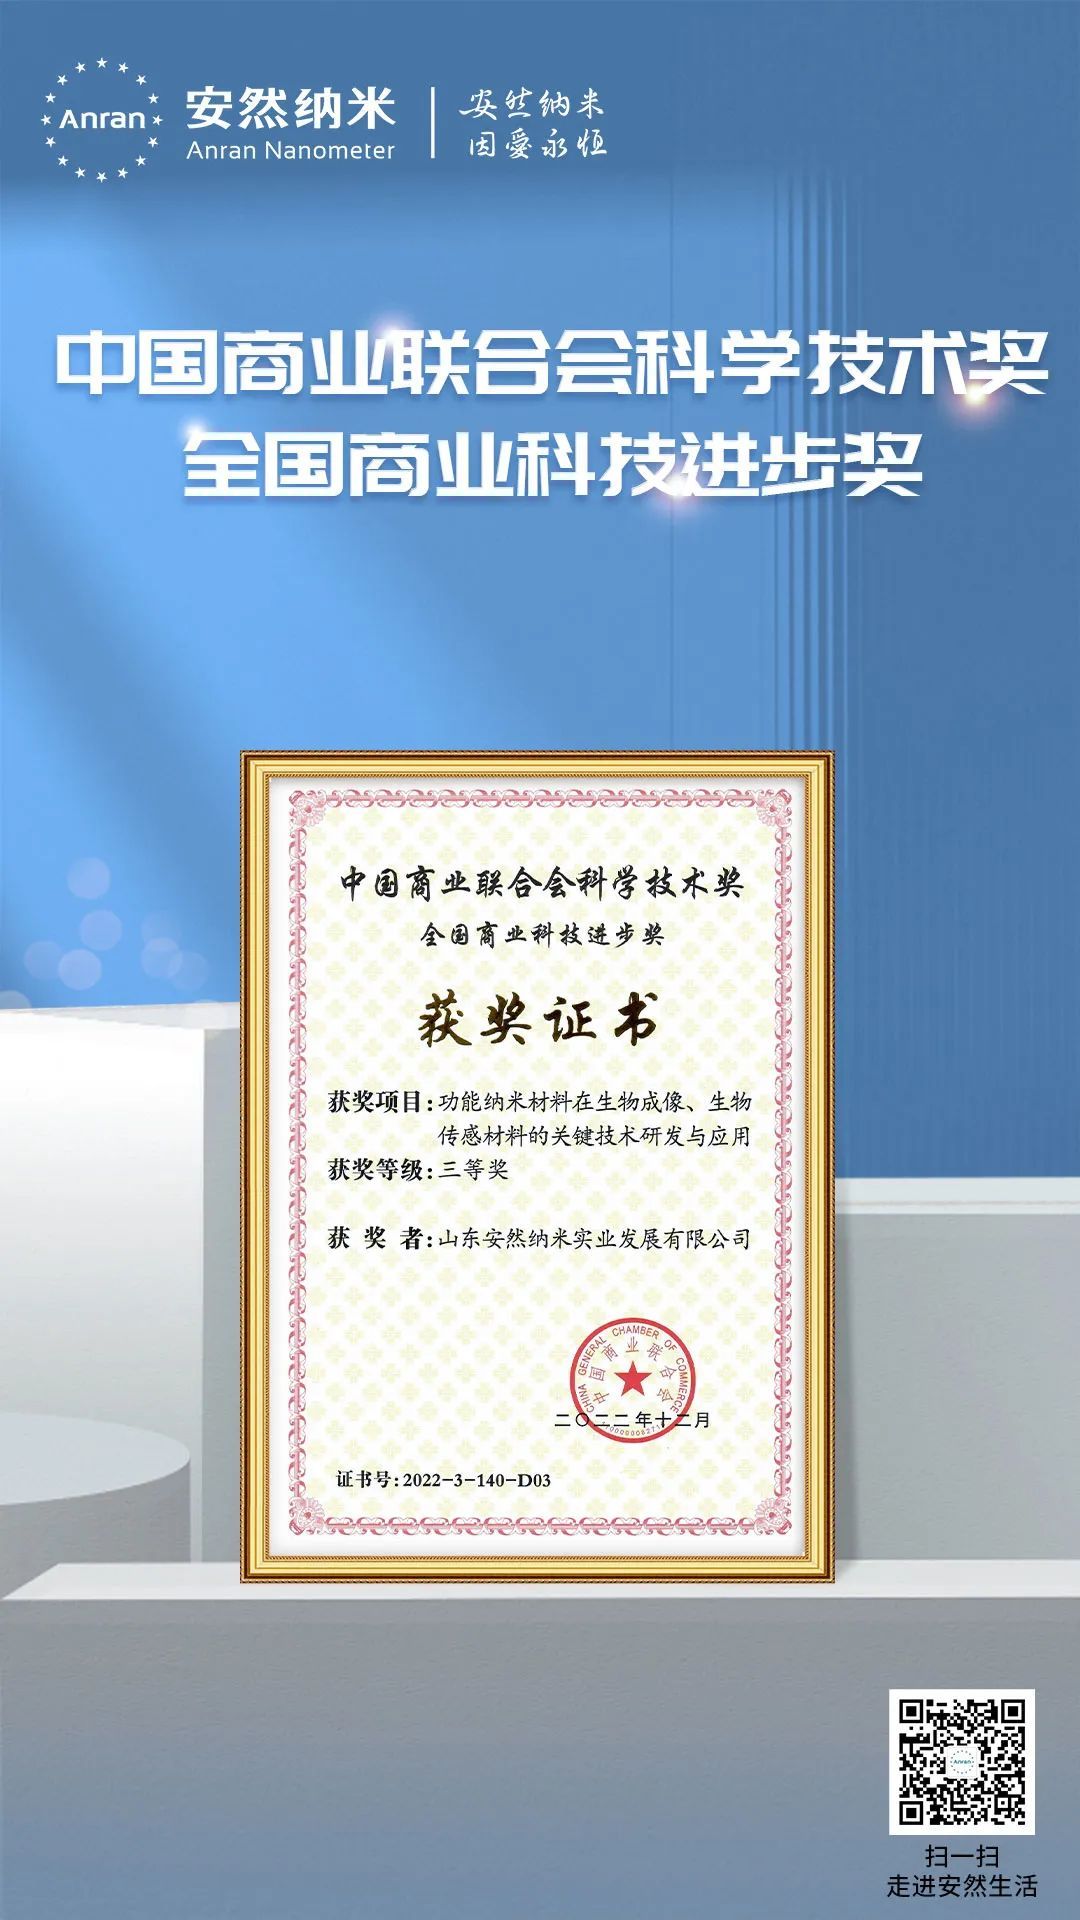 安然集团荣获中国商业联合会科学技术奖全国商业科技进步奖三等奖